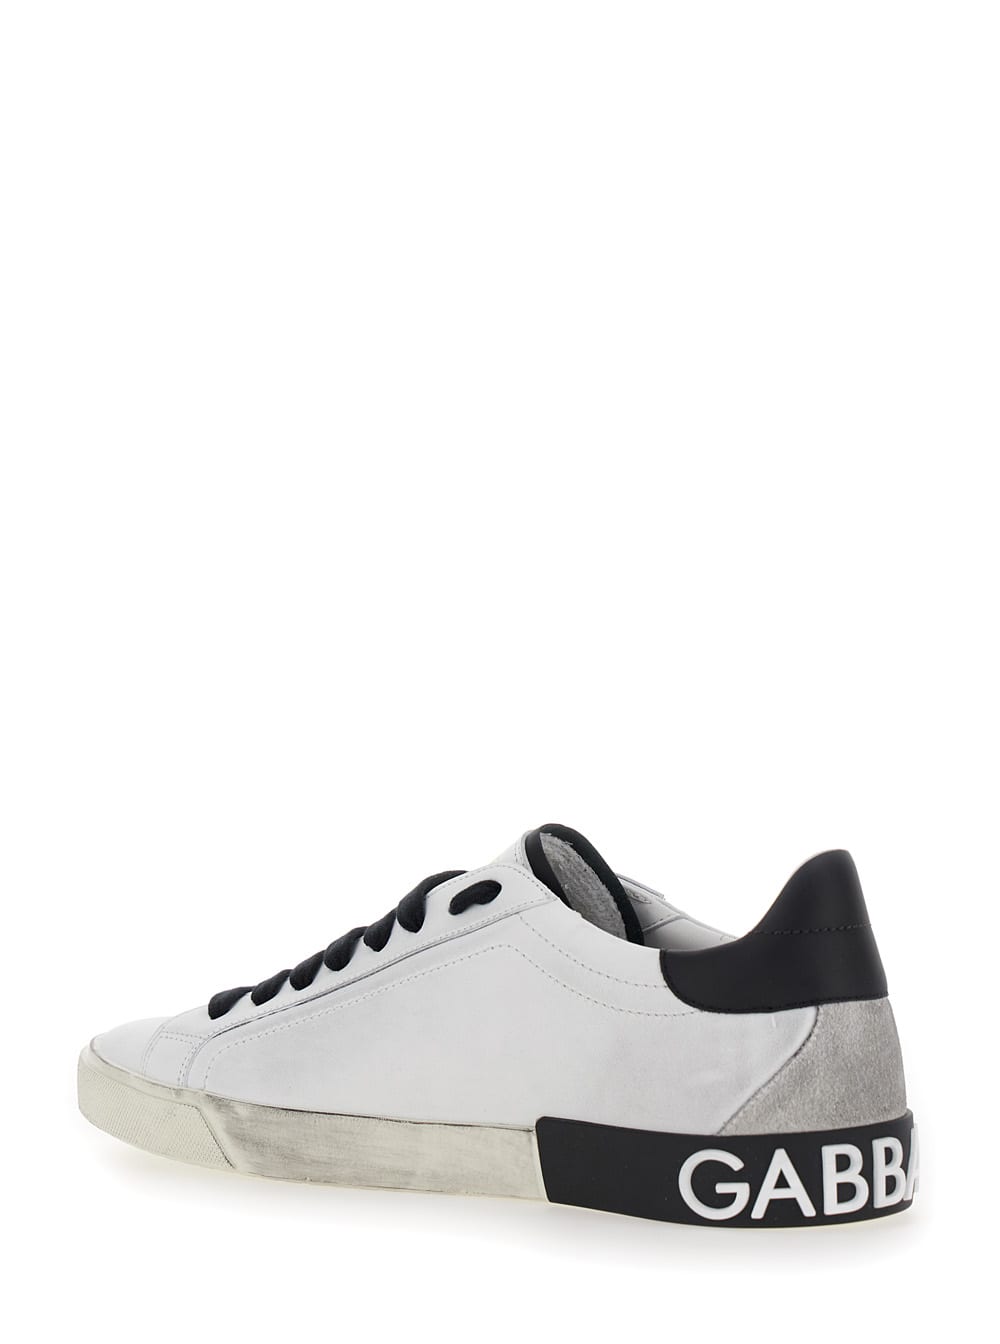 Shop Dolce & Gabbana Sneaker Bassa Vit.napp+vit.nap Bianco/nero In White/black